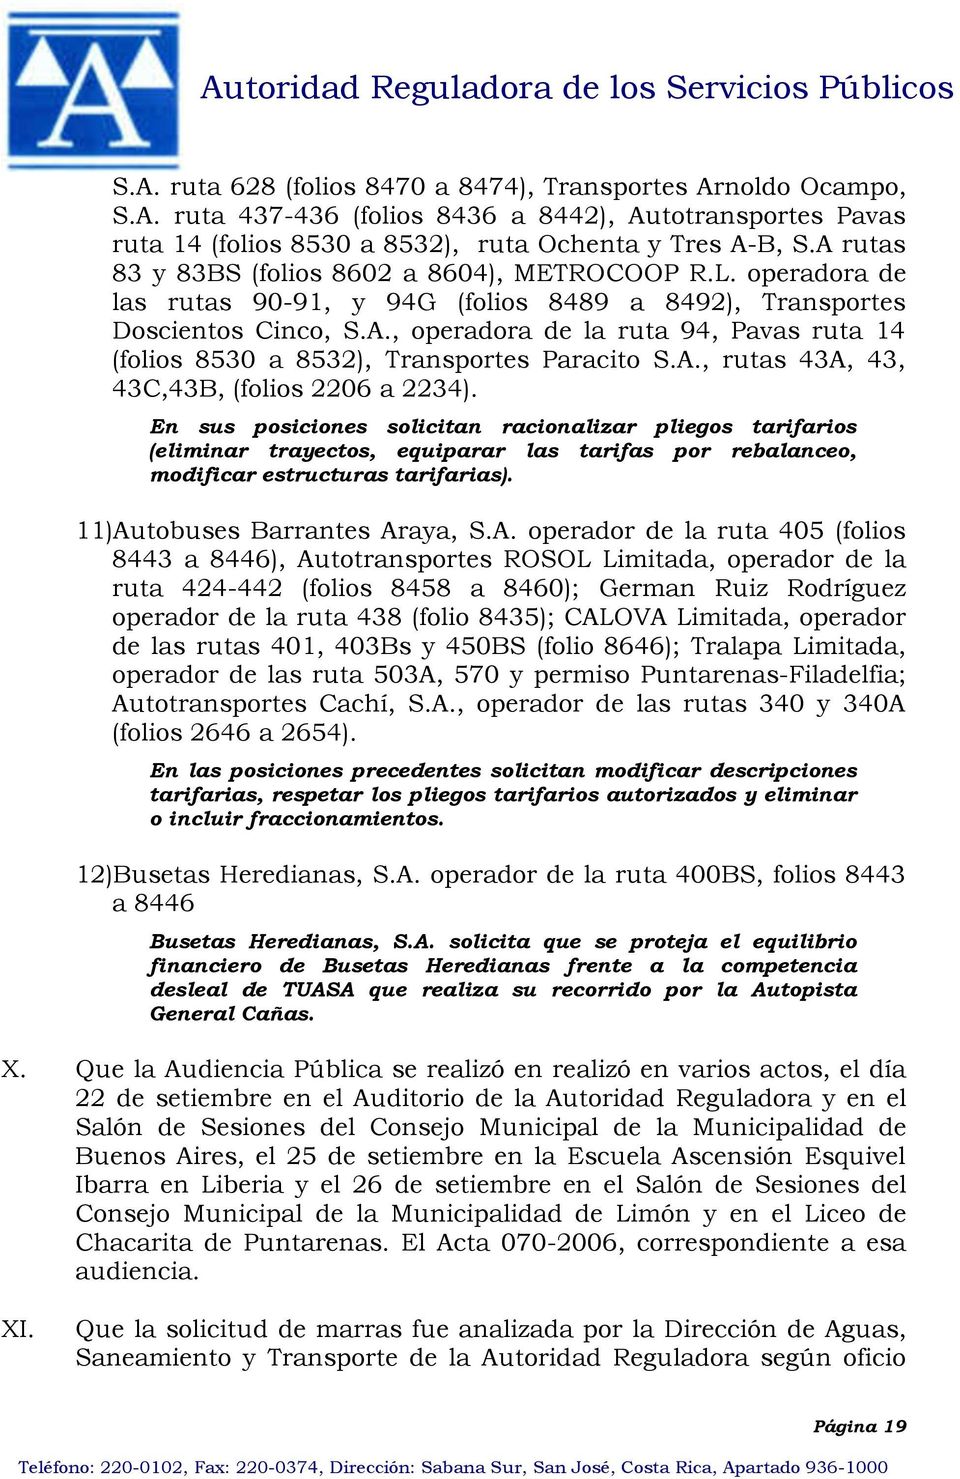 A., rutas 43A, 43, 43C,43B, (folios 2206 a 2234).